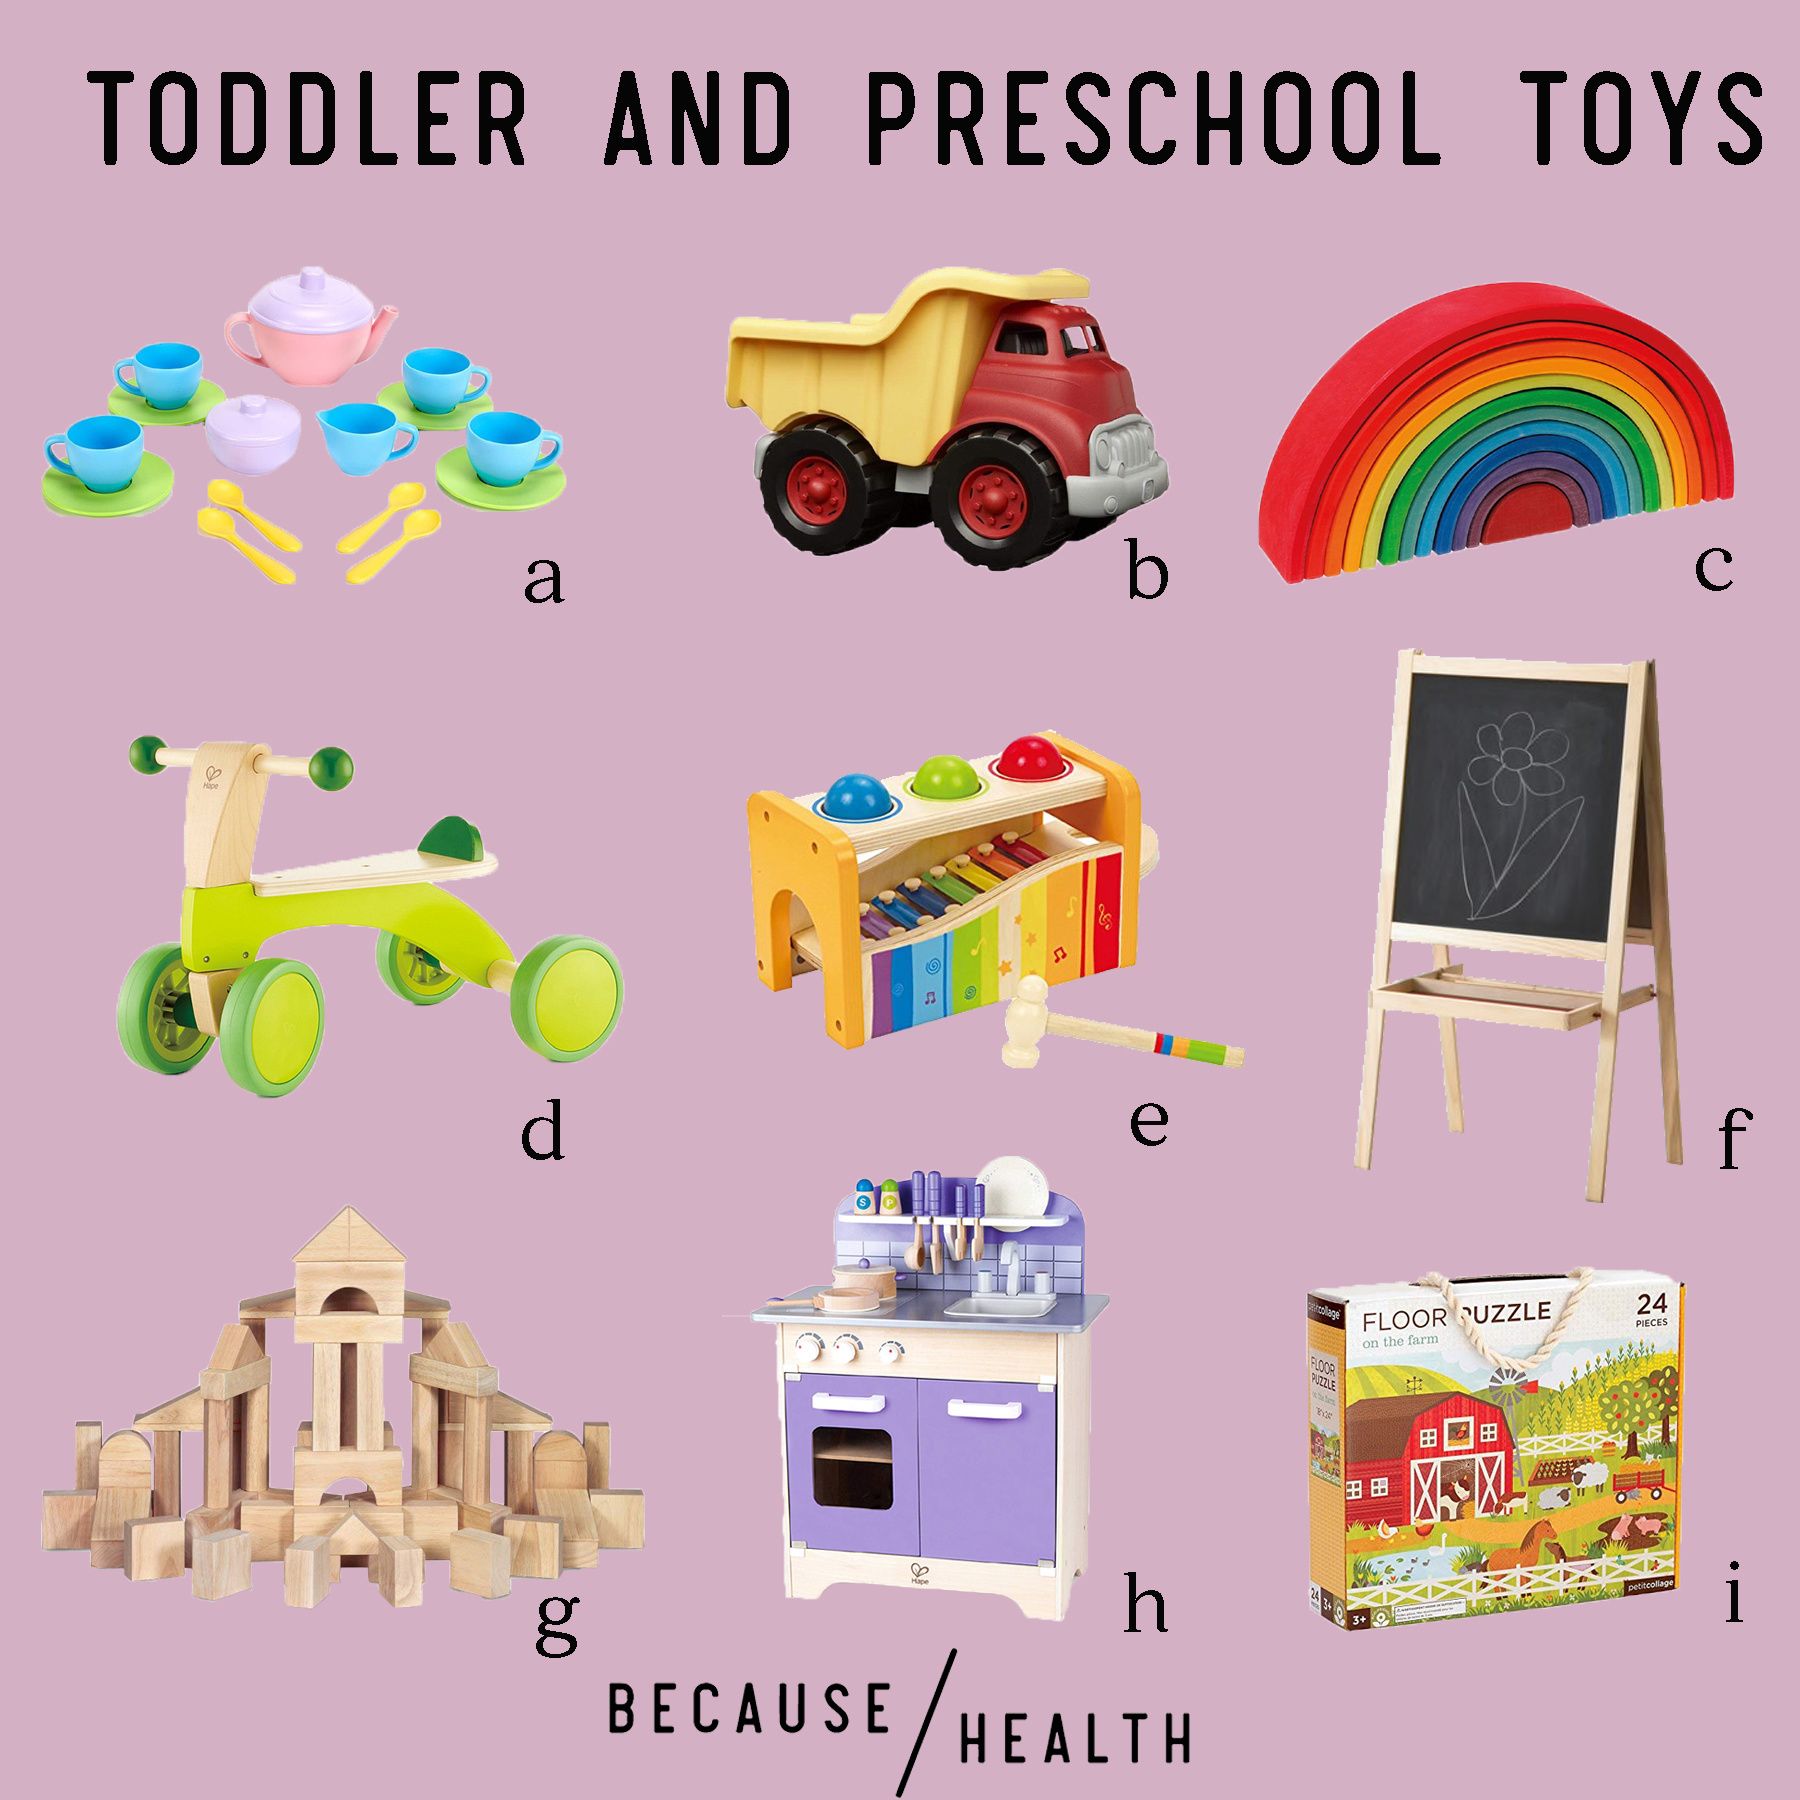 safe toys for infants